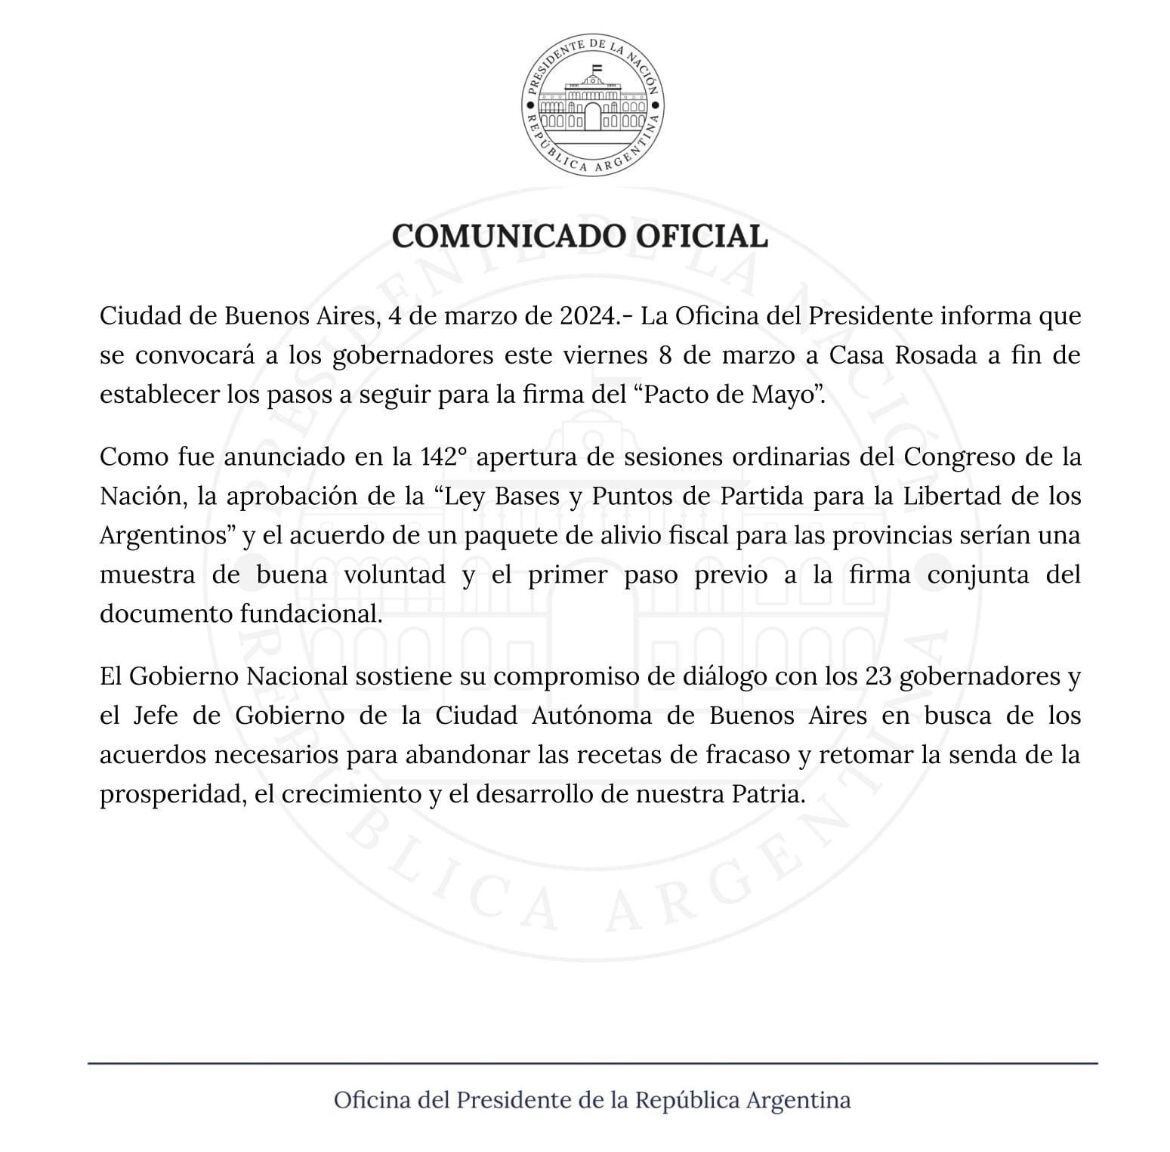 Comunicado de la Oficina del Presidente de la República Argentina, confirmando la convocatoria a los gobernadores para el viernes 8 de marzo